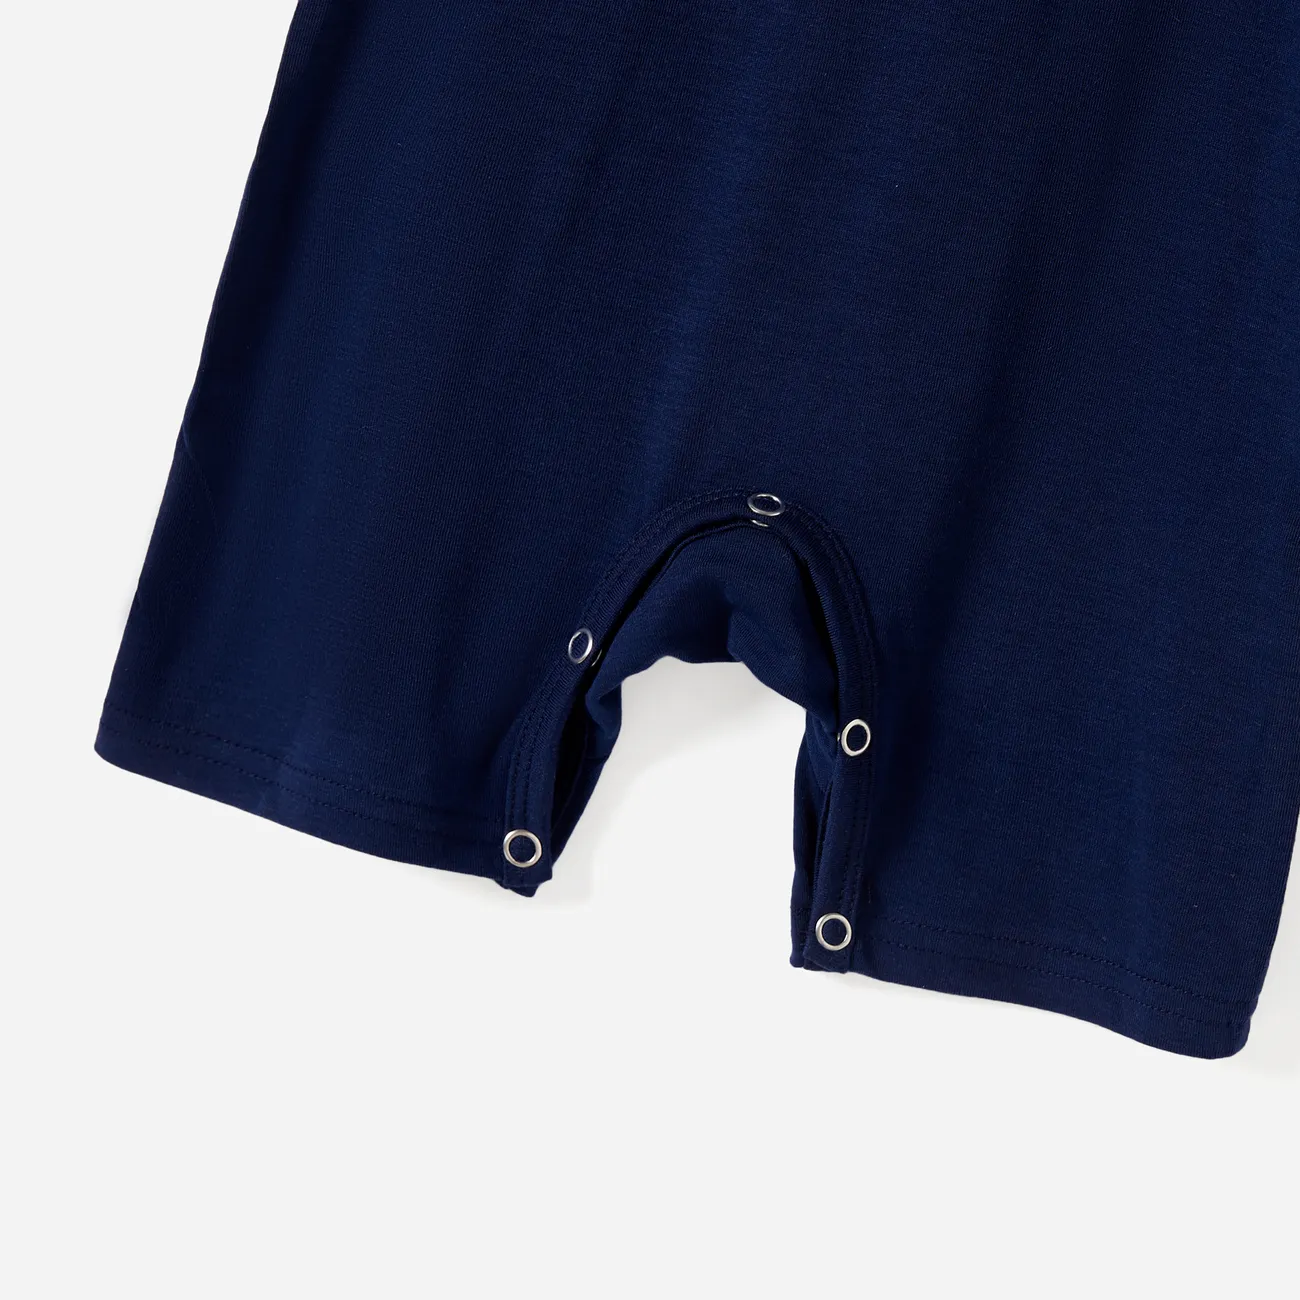 Look Familial Manches courtes Tenues de famille assorties Pyjamas (Flame Resistant) bleu Noir big image 1